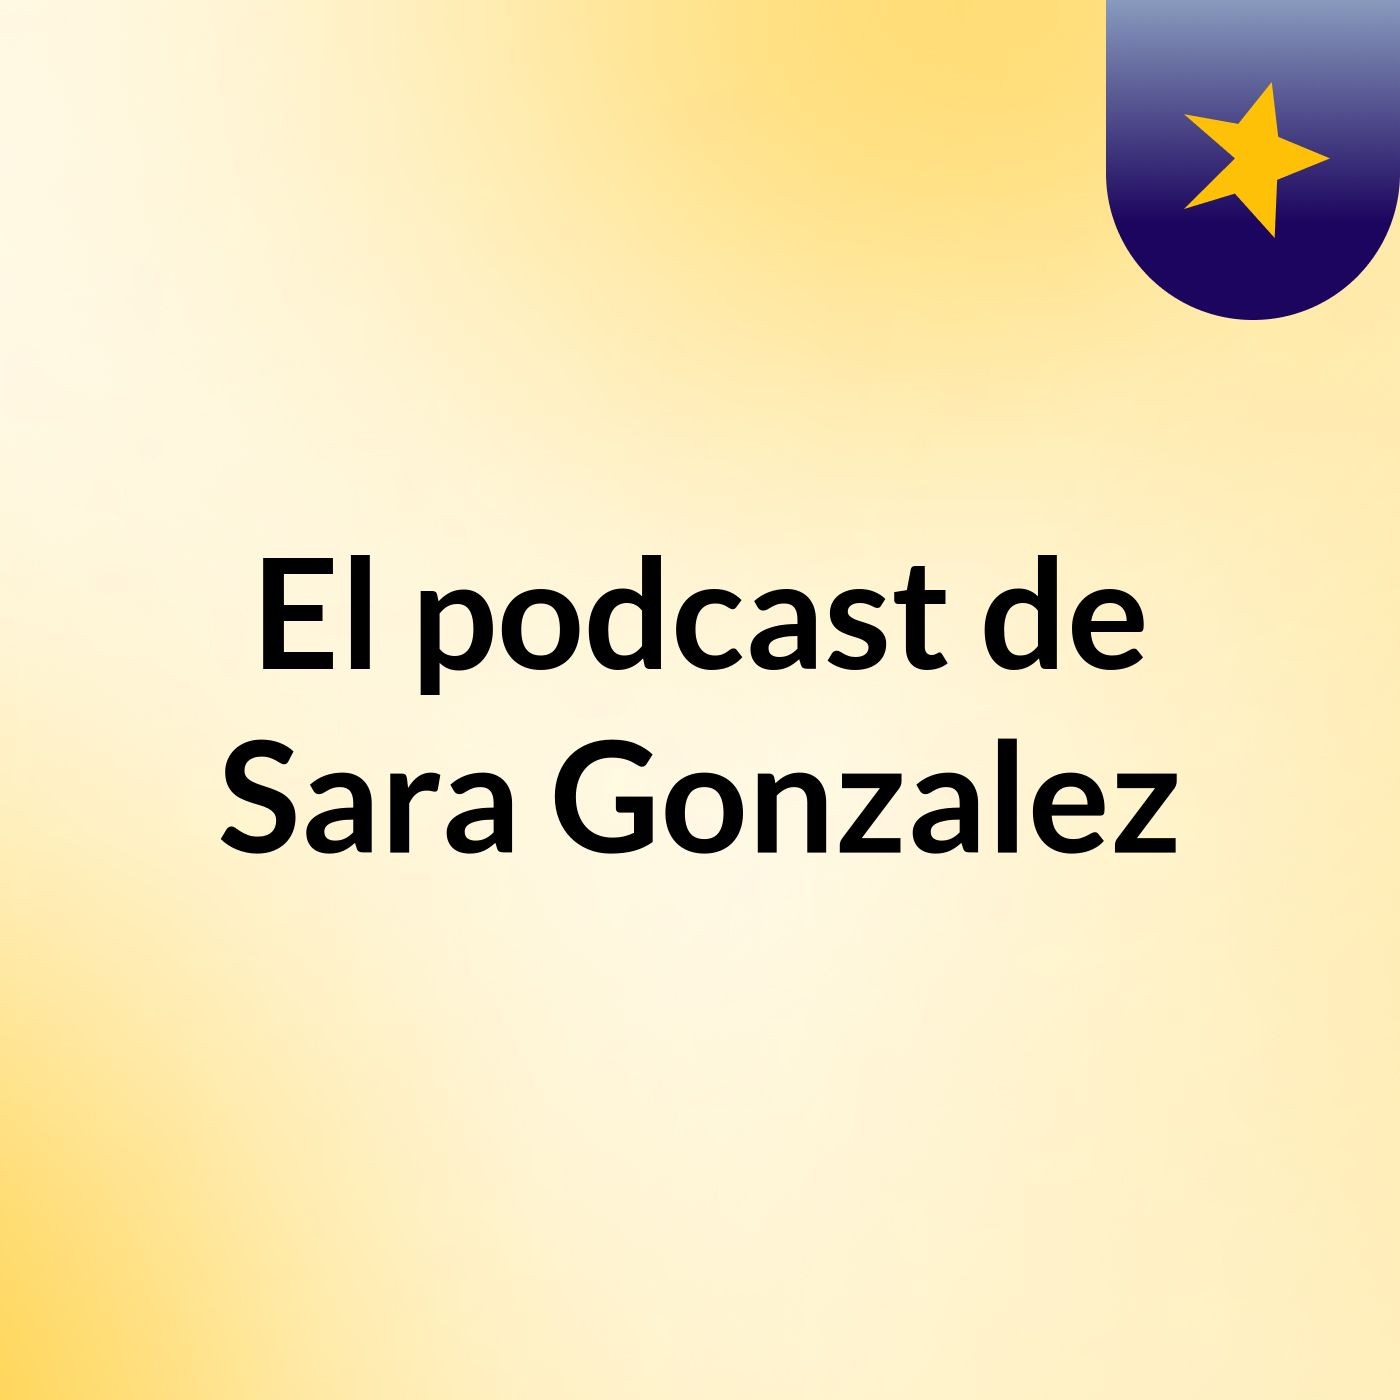 El podcast de Sara Gonzalez